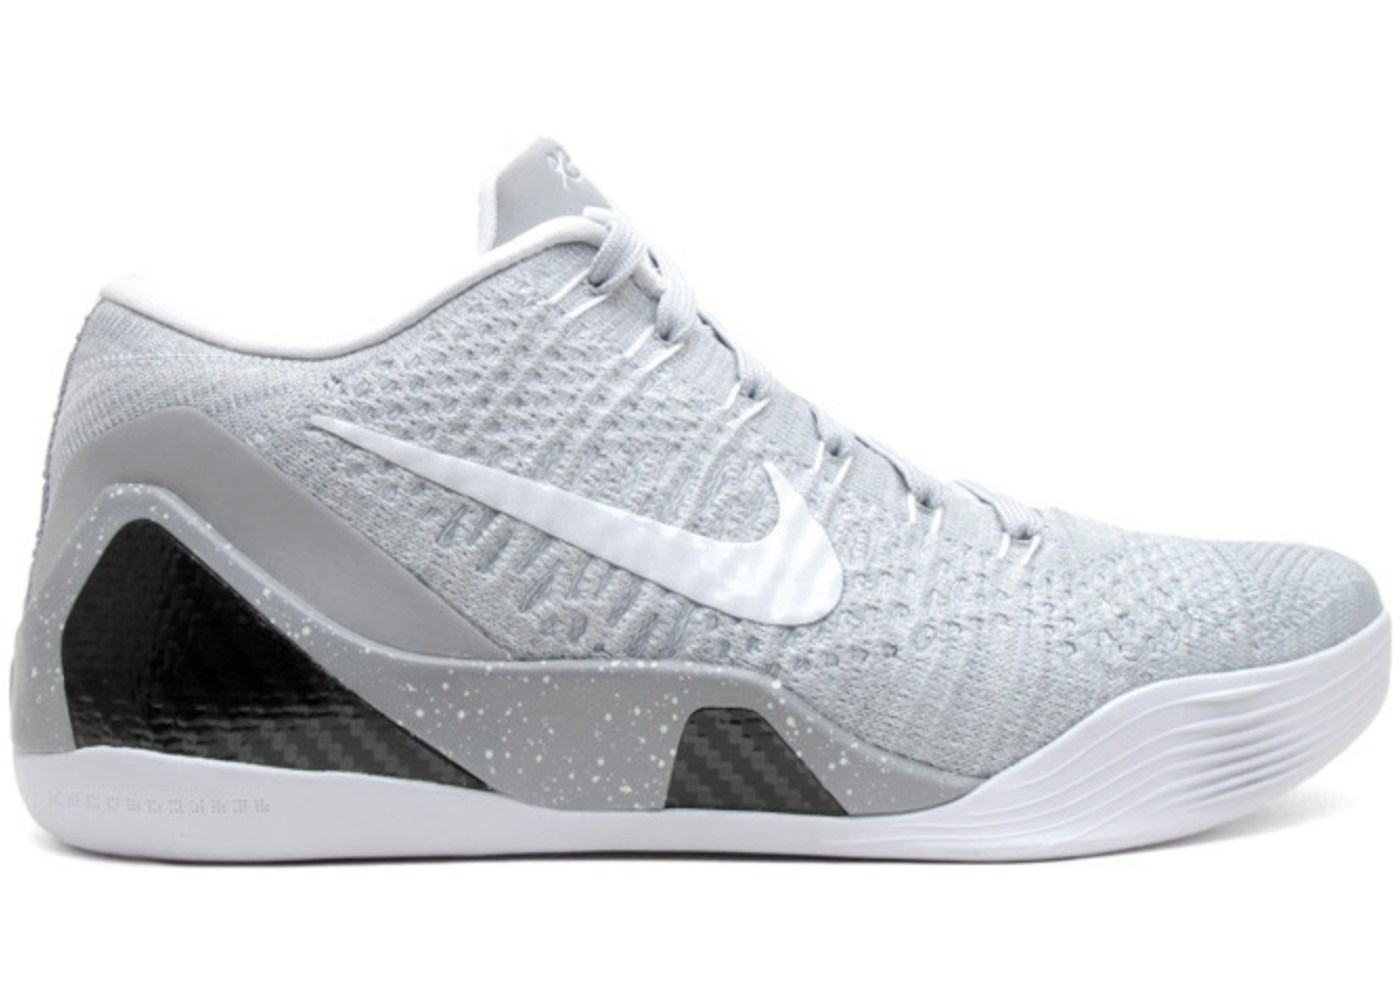 Nike Kobe 9 Elite Premium Low HTM Milan Grey - 698595-010 Kobe 9 Low On Feet